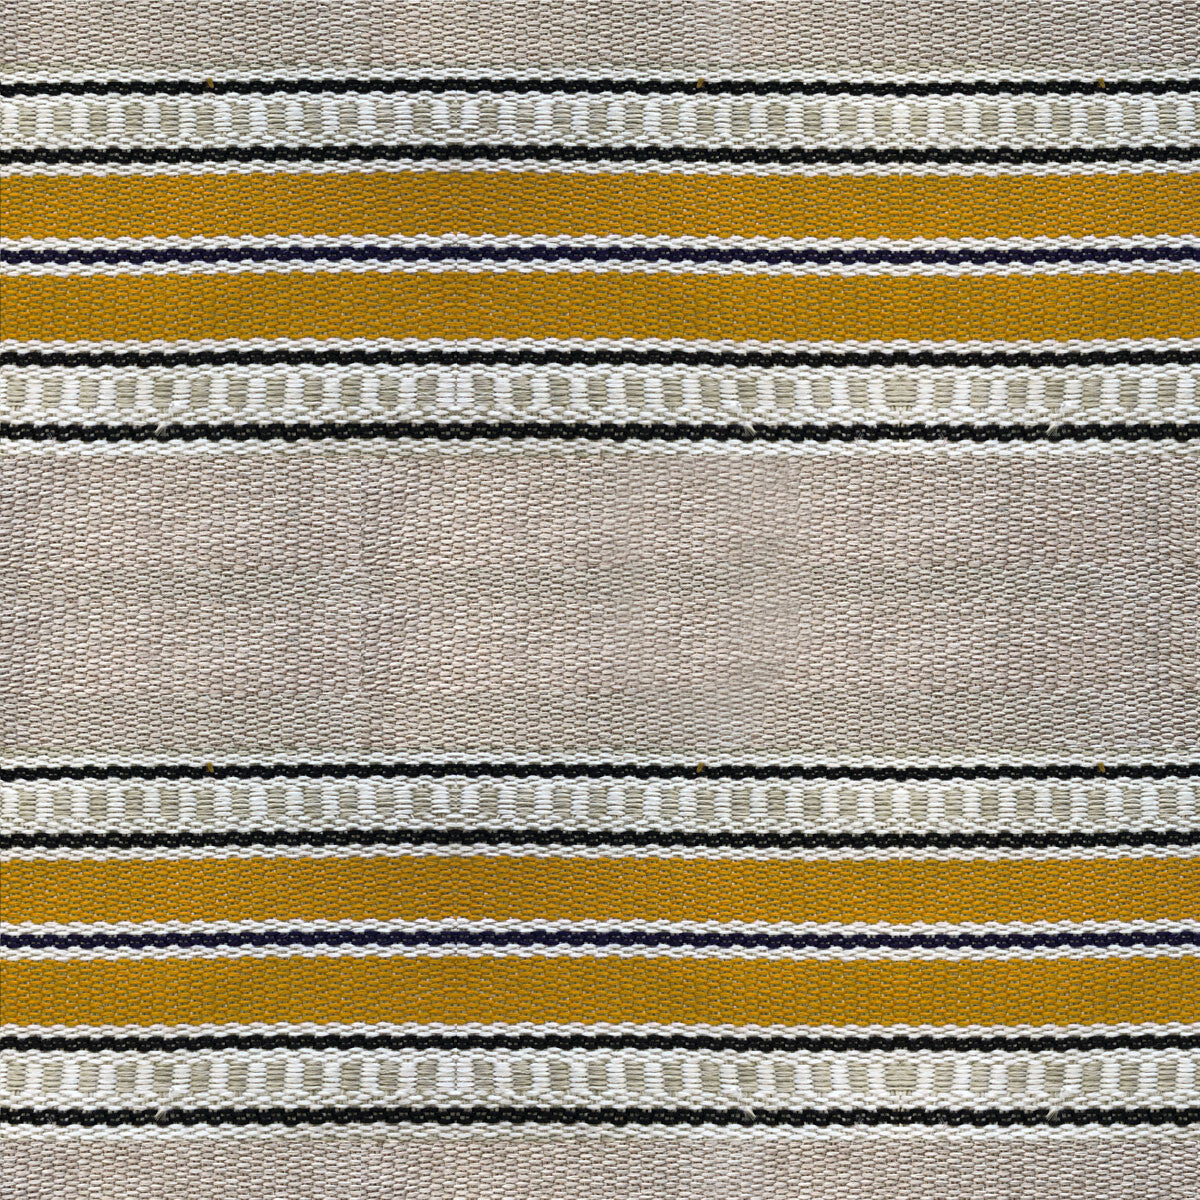 Adam fabric in amarillo color - pattern LCT1068.002.0 - by Gaston y Daniela in the Lorenzo Castillo VI collection